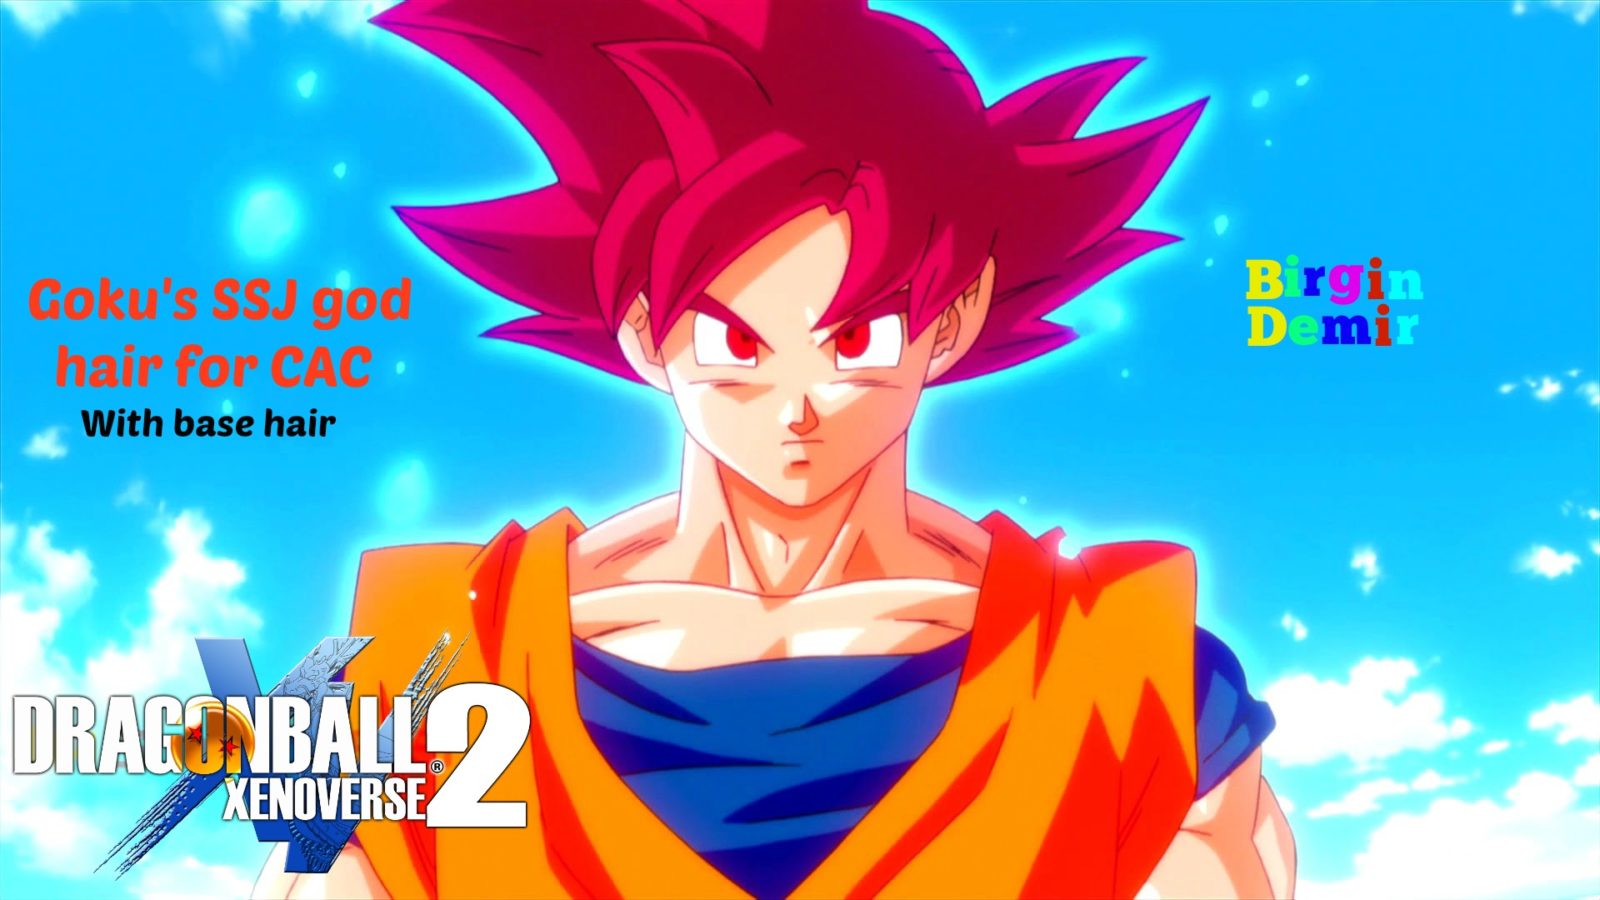 Goku's transformation into a god - wide 3